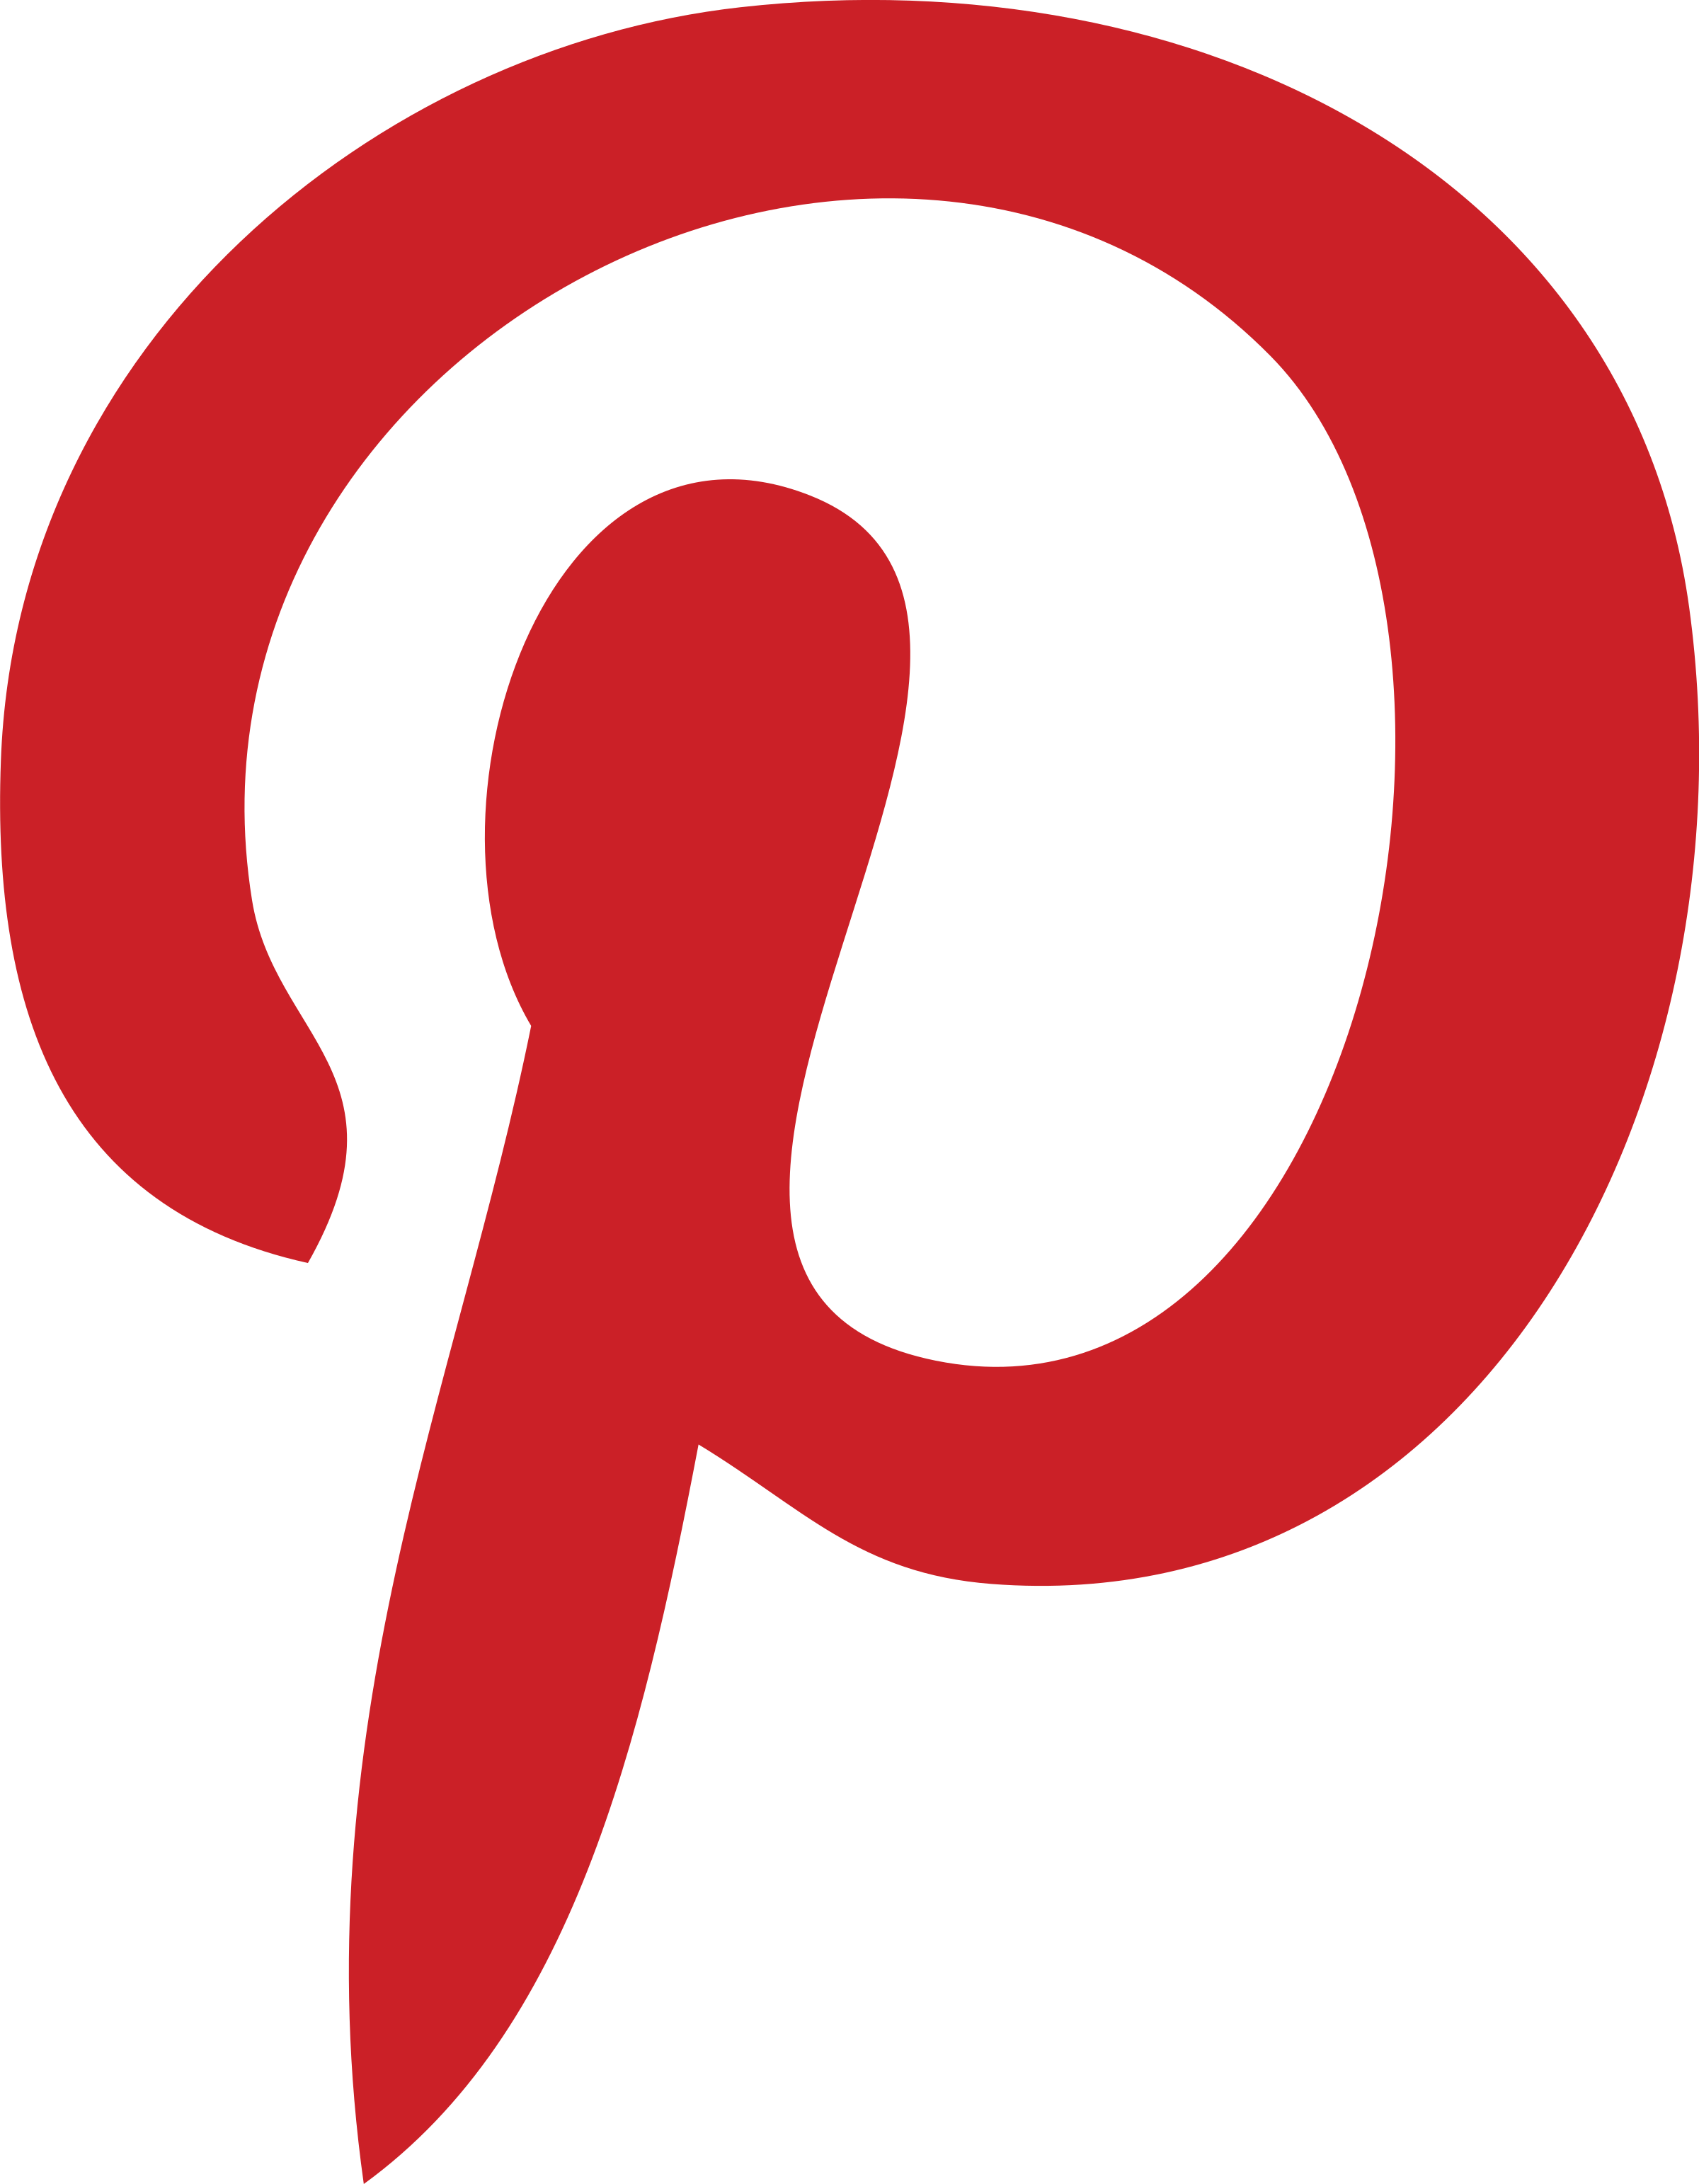 Pinetrest Logo - Pinterest 2 Logo PNG Transparent & SVG Vector